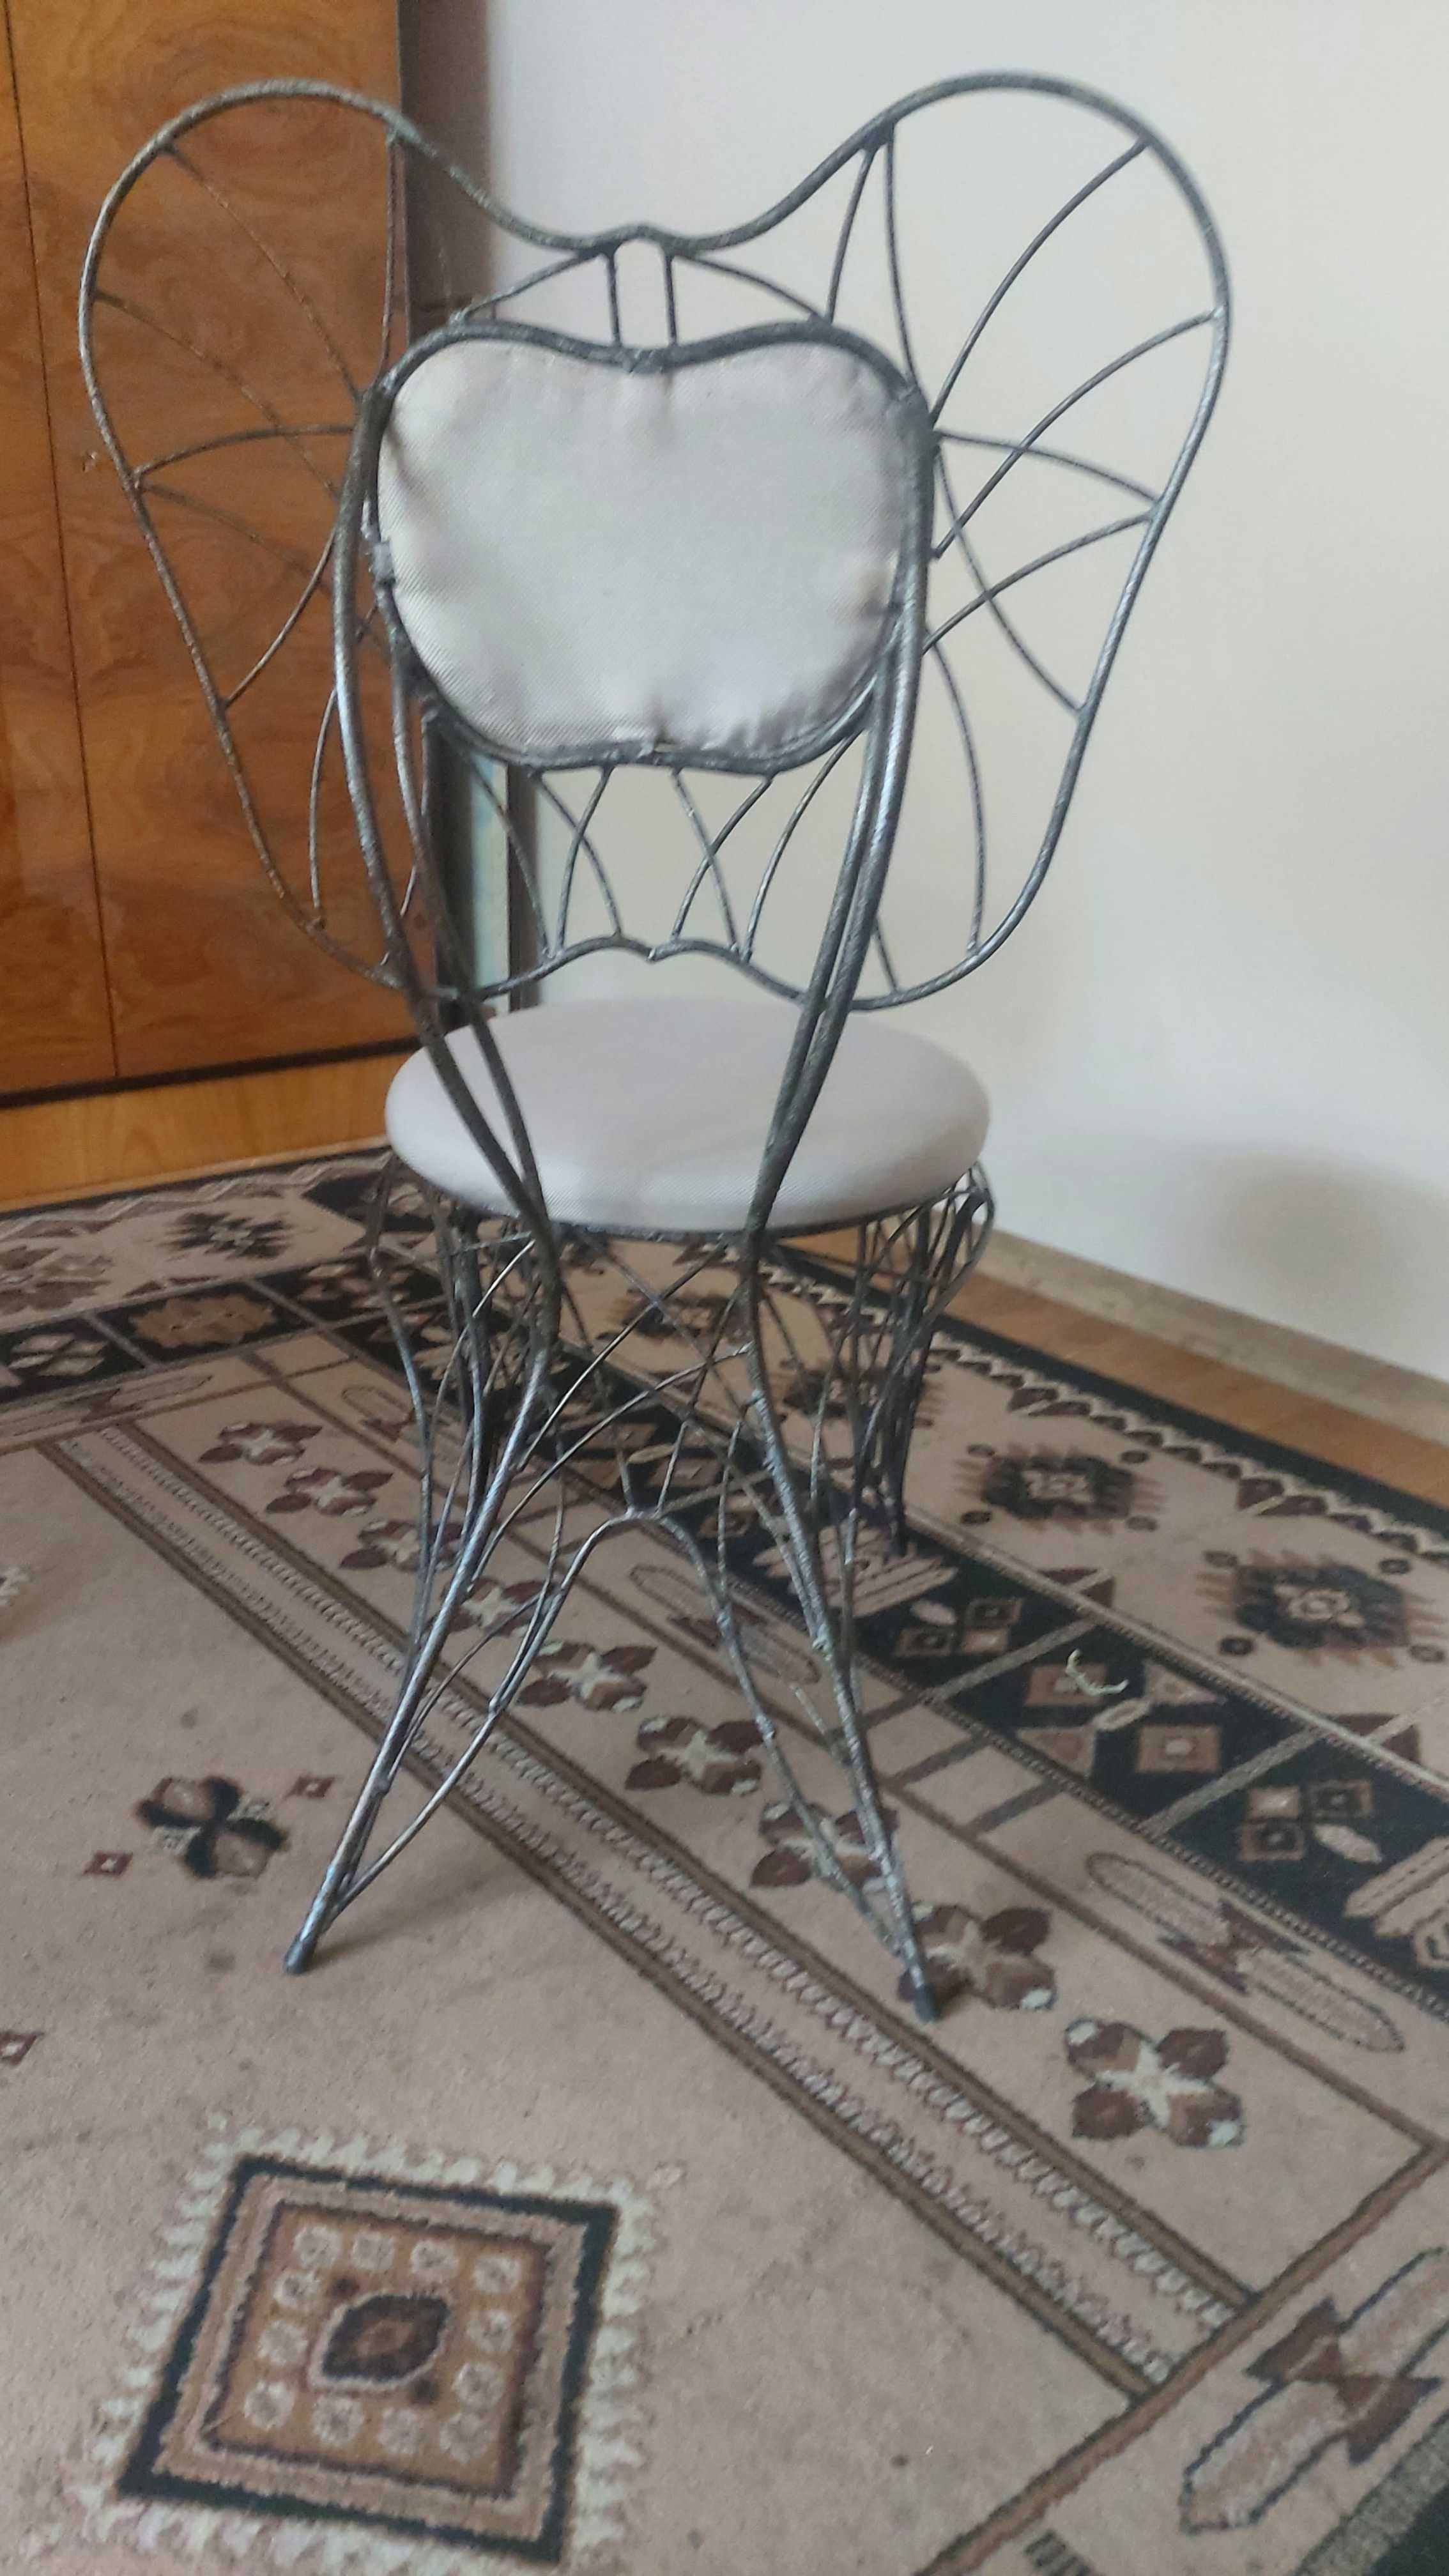 szklany stół z metalowymi nogami i krzesła